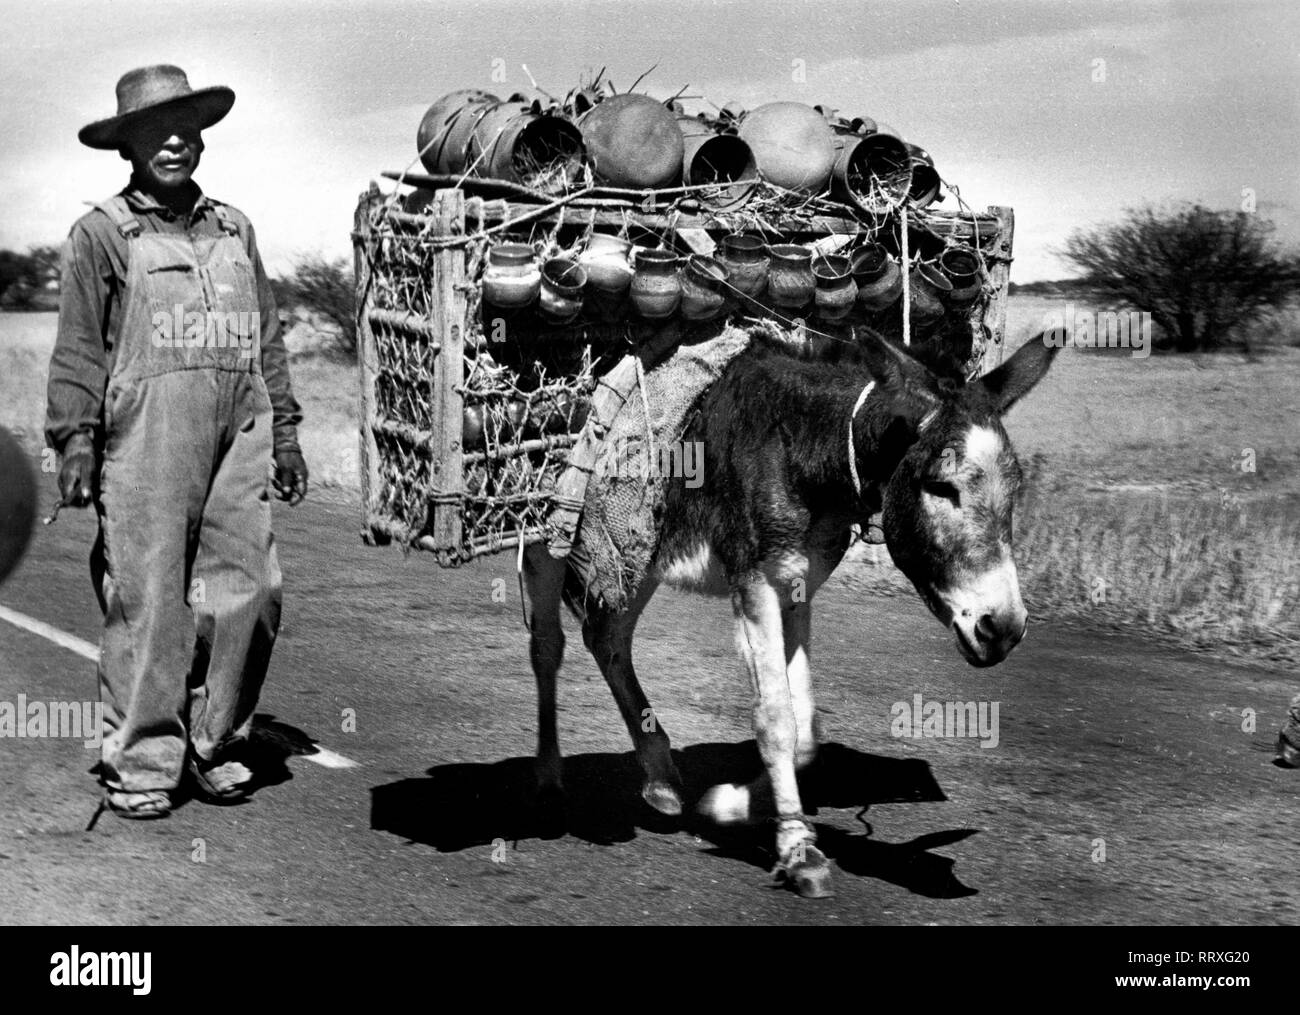 Reisen nach Mexiko - Mexiko - Bauer mit seinem pack Esel auf dem Weg zum Wochenmarkt. Bauer mit seinem Bepackten Esel unterwegs zum Markt. Bild Datum ca. 1962. Foto Erich Andres Stockfoto